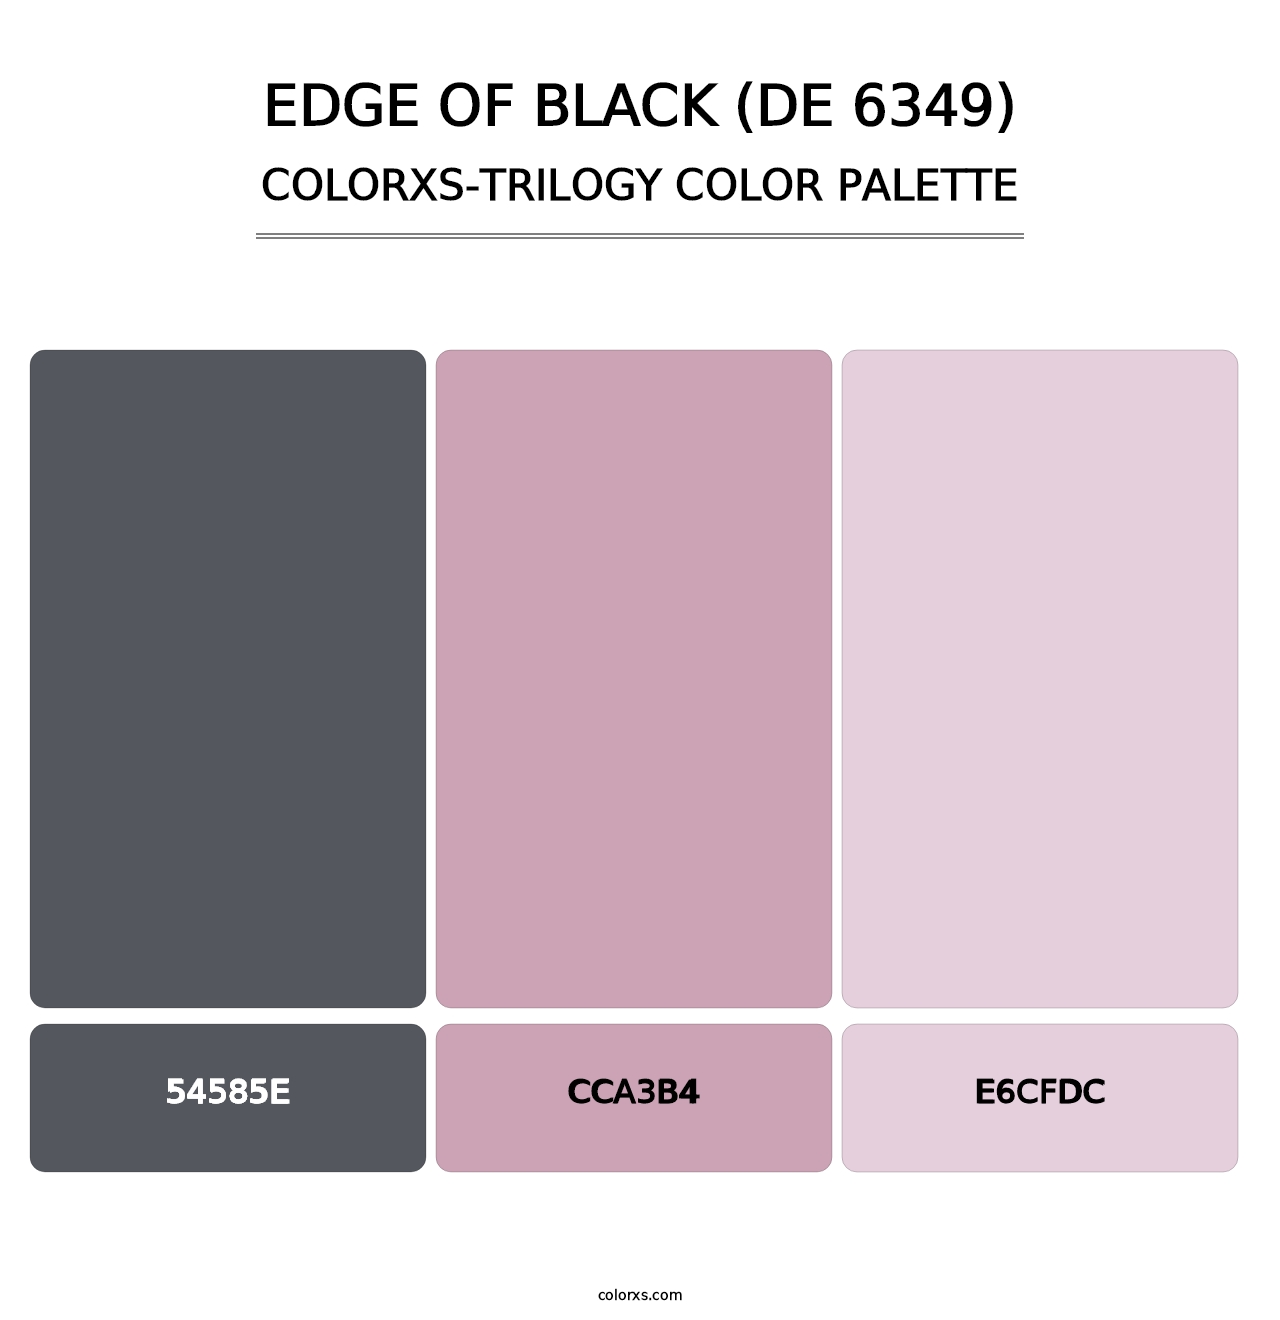 Edge of Black (DE 6349) - Colorxs Trilogy Palette